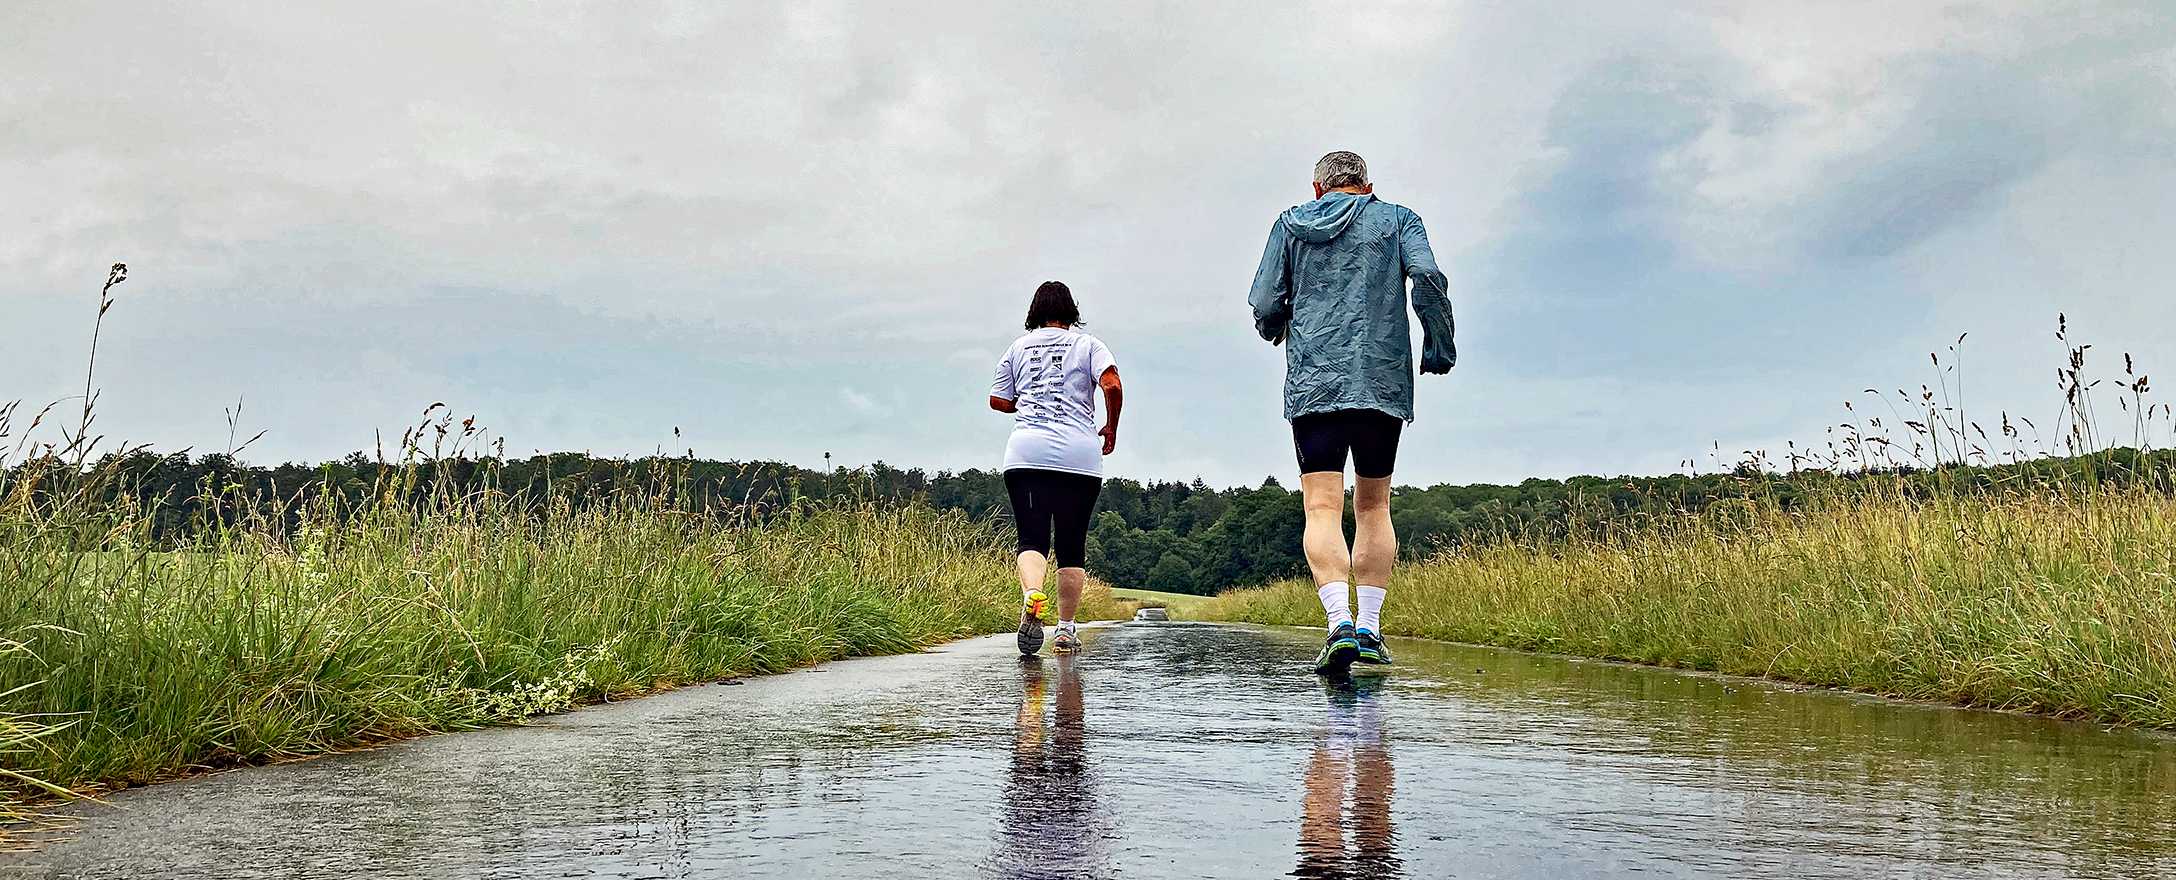 2 personen joggen im regen